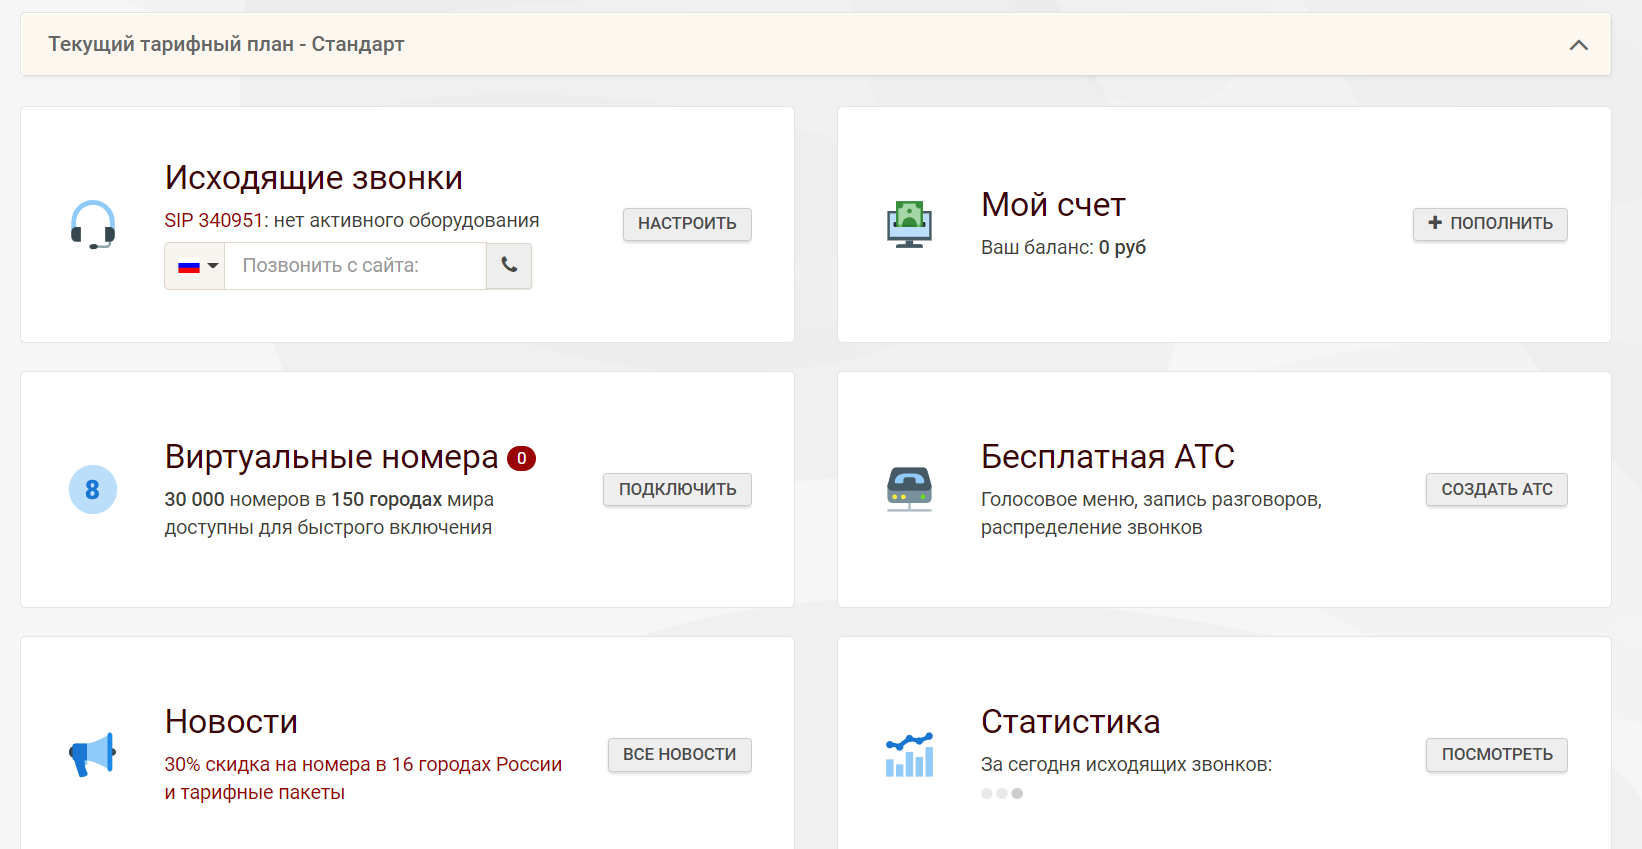 Телеграмм онлайн регистрация на русском по номеру телефона бесплатно фото 104